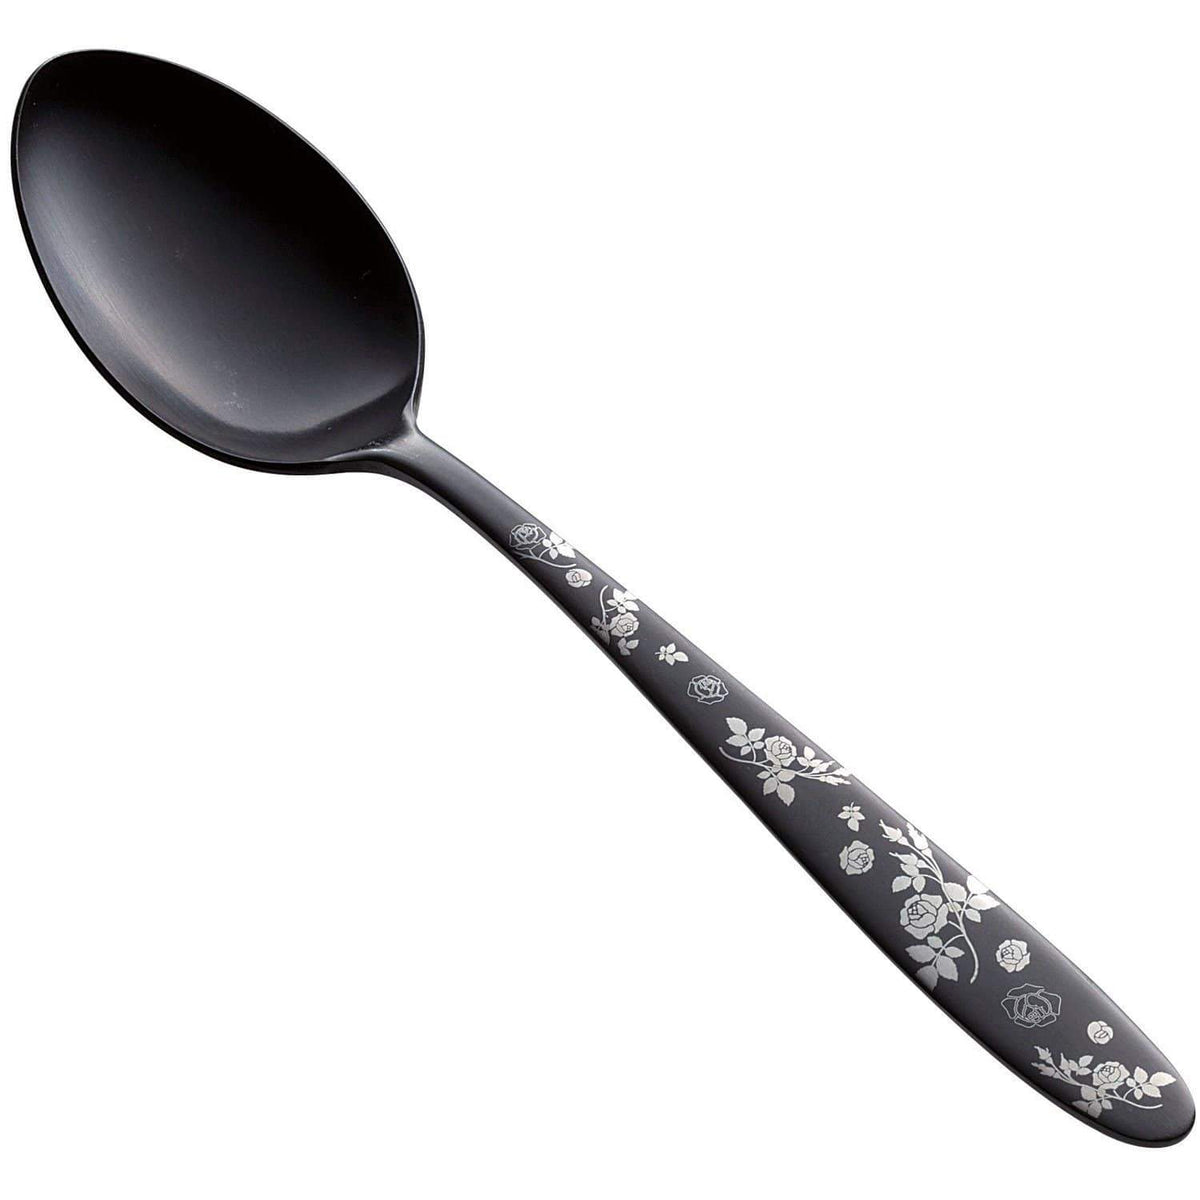 Todai Rikyu Black Rose Pattern Dessert Spoon Spoons